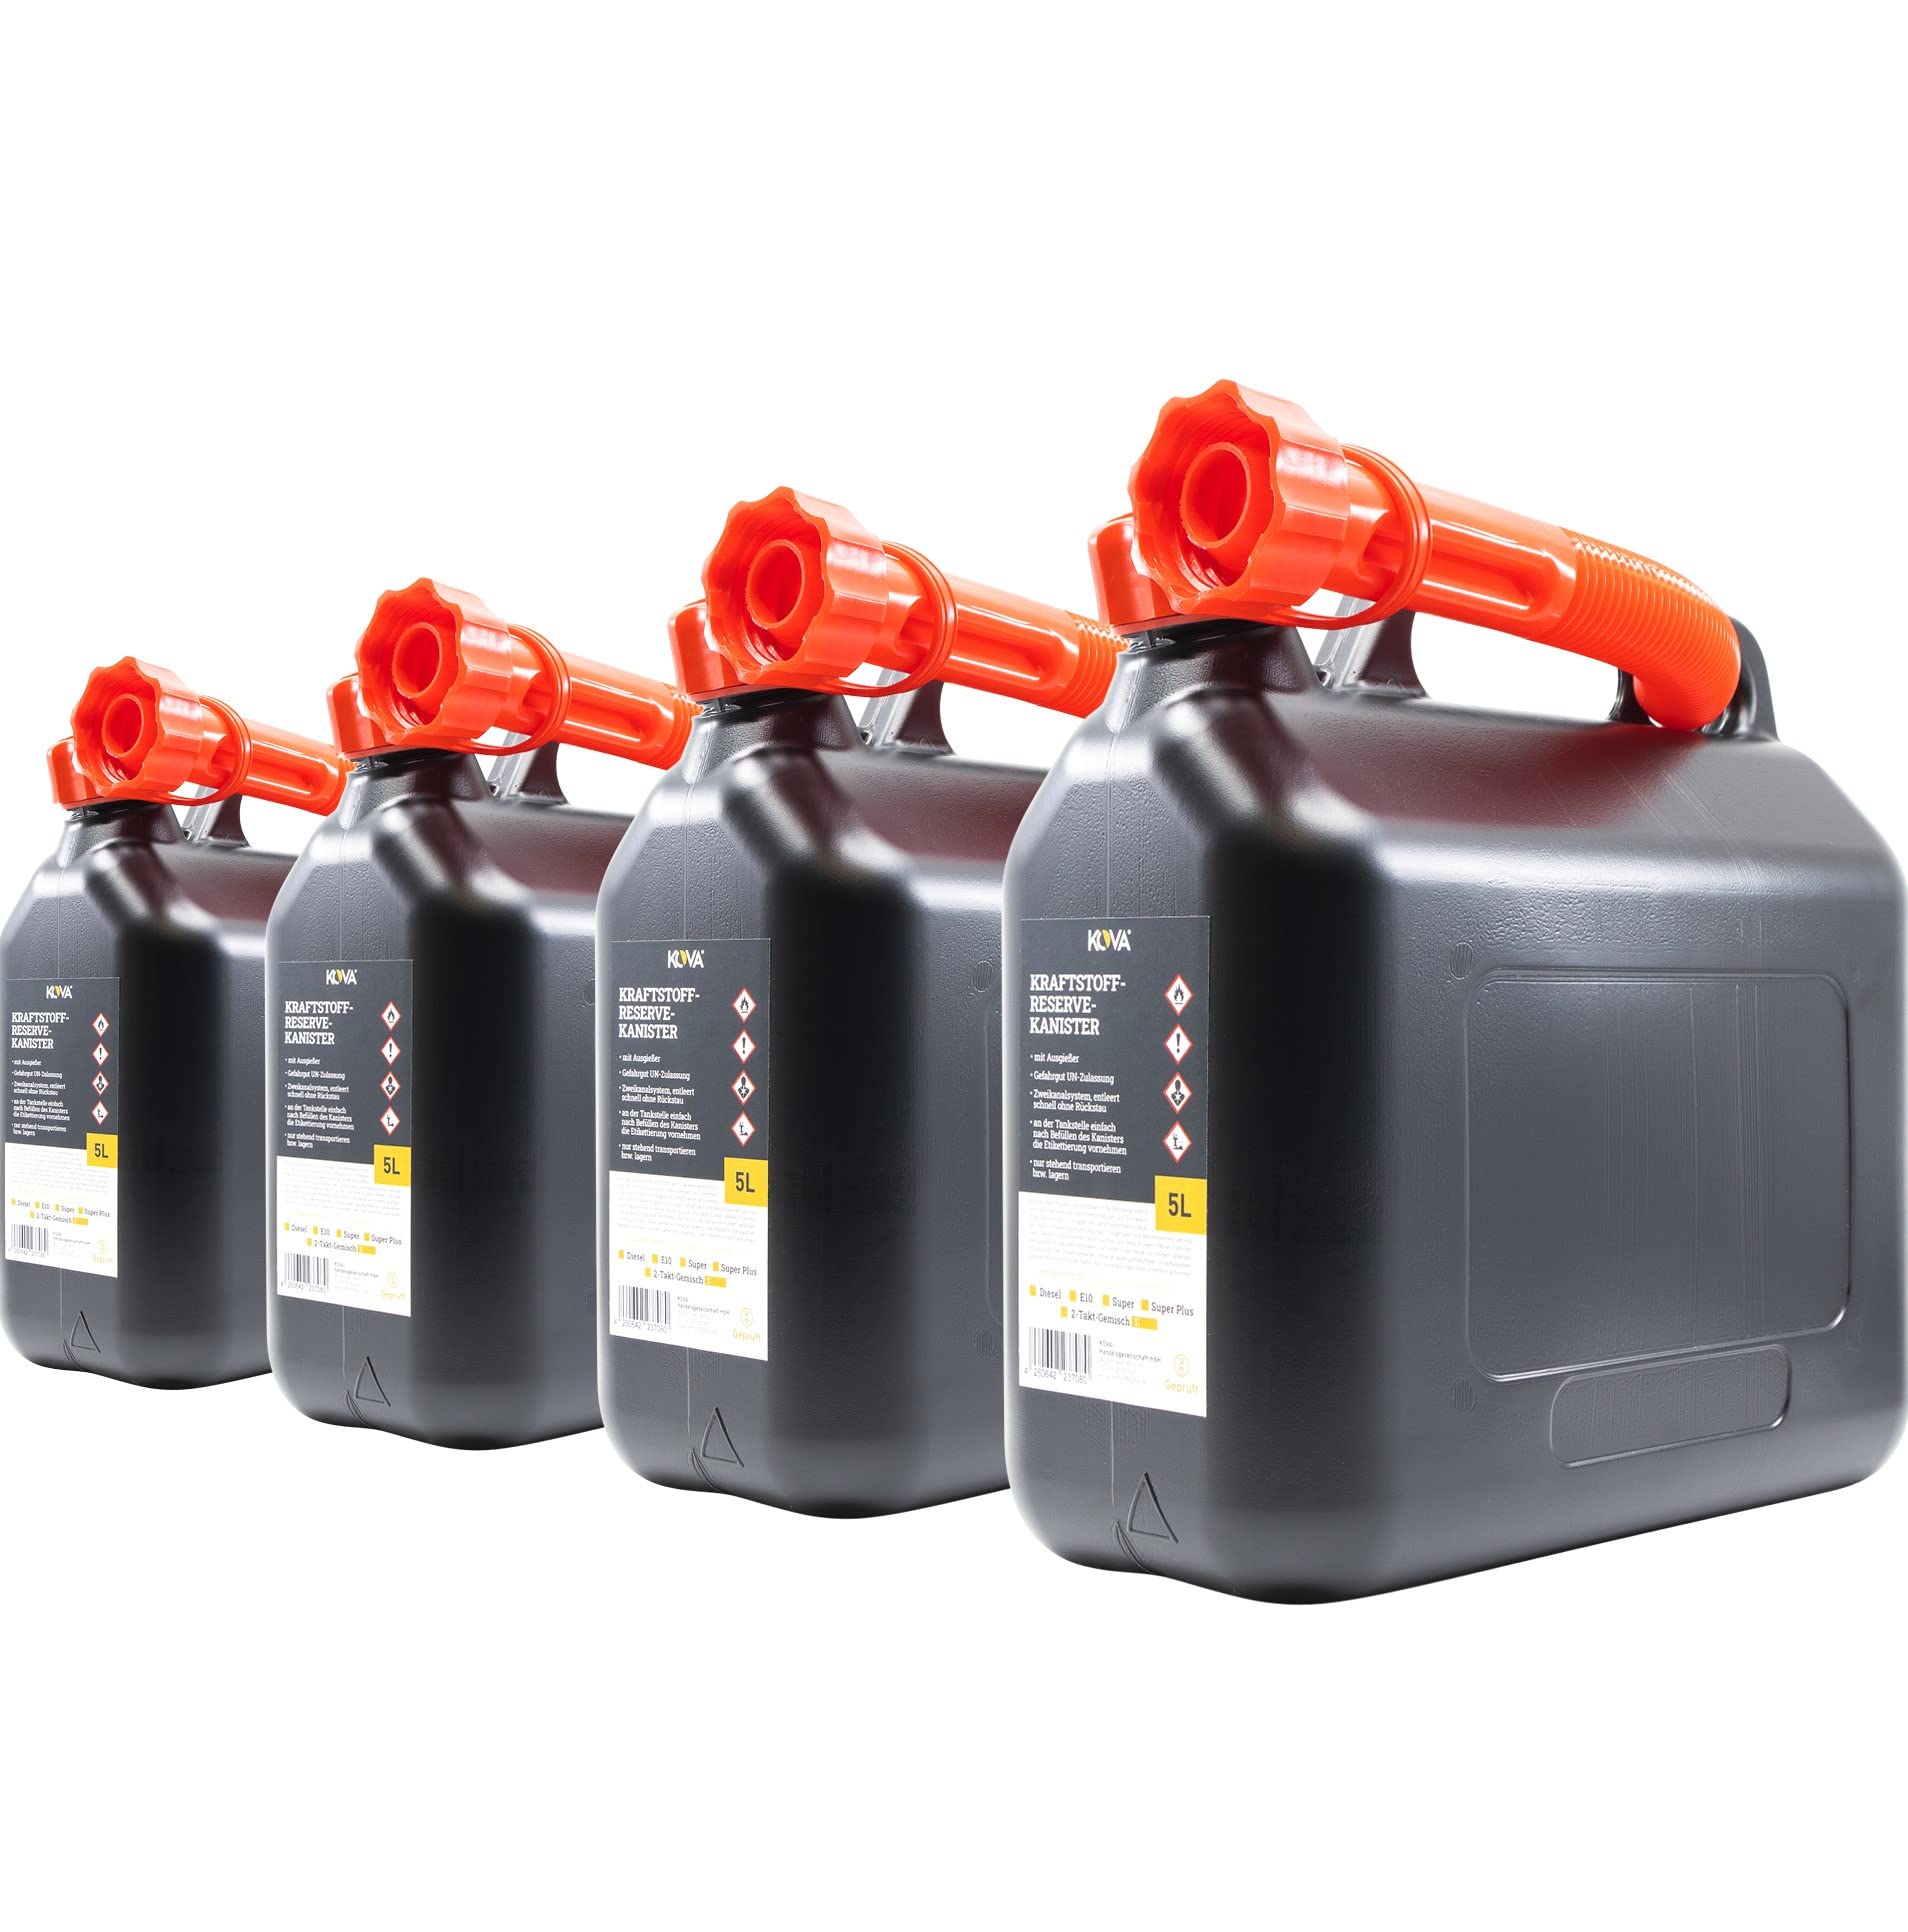 KOVA 4x 5L Benzinkanister - Kraftstoffkanister mit UN-Zulassung - Praktische Reserve Kanister in Schwarz - Auswahl zwischen 5L, 10L und 20L - Ideal für Benzin, Diesel & Kraftstoff